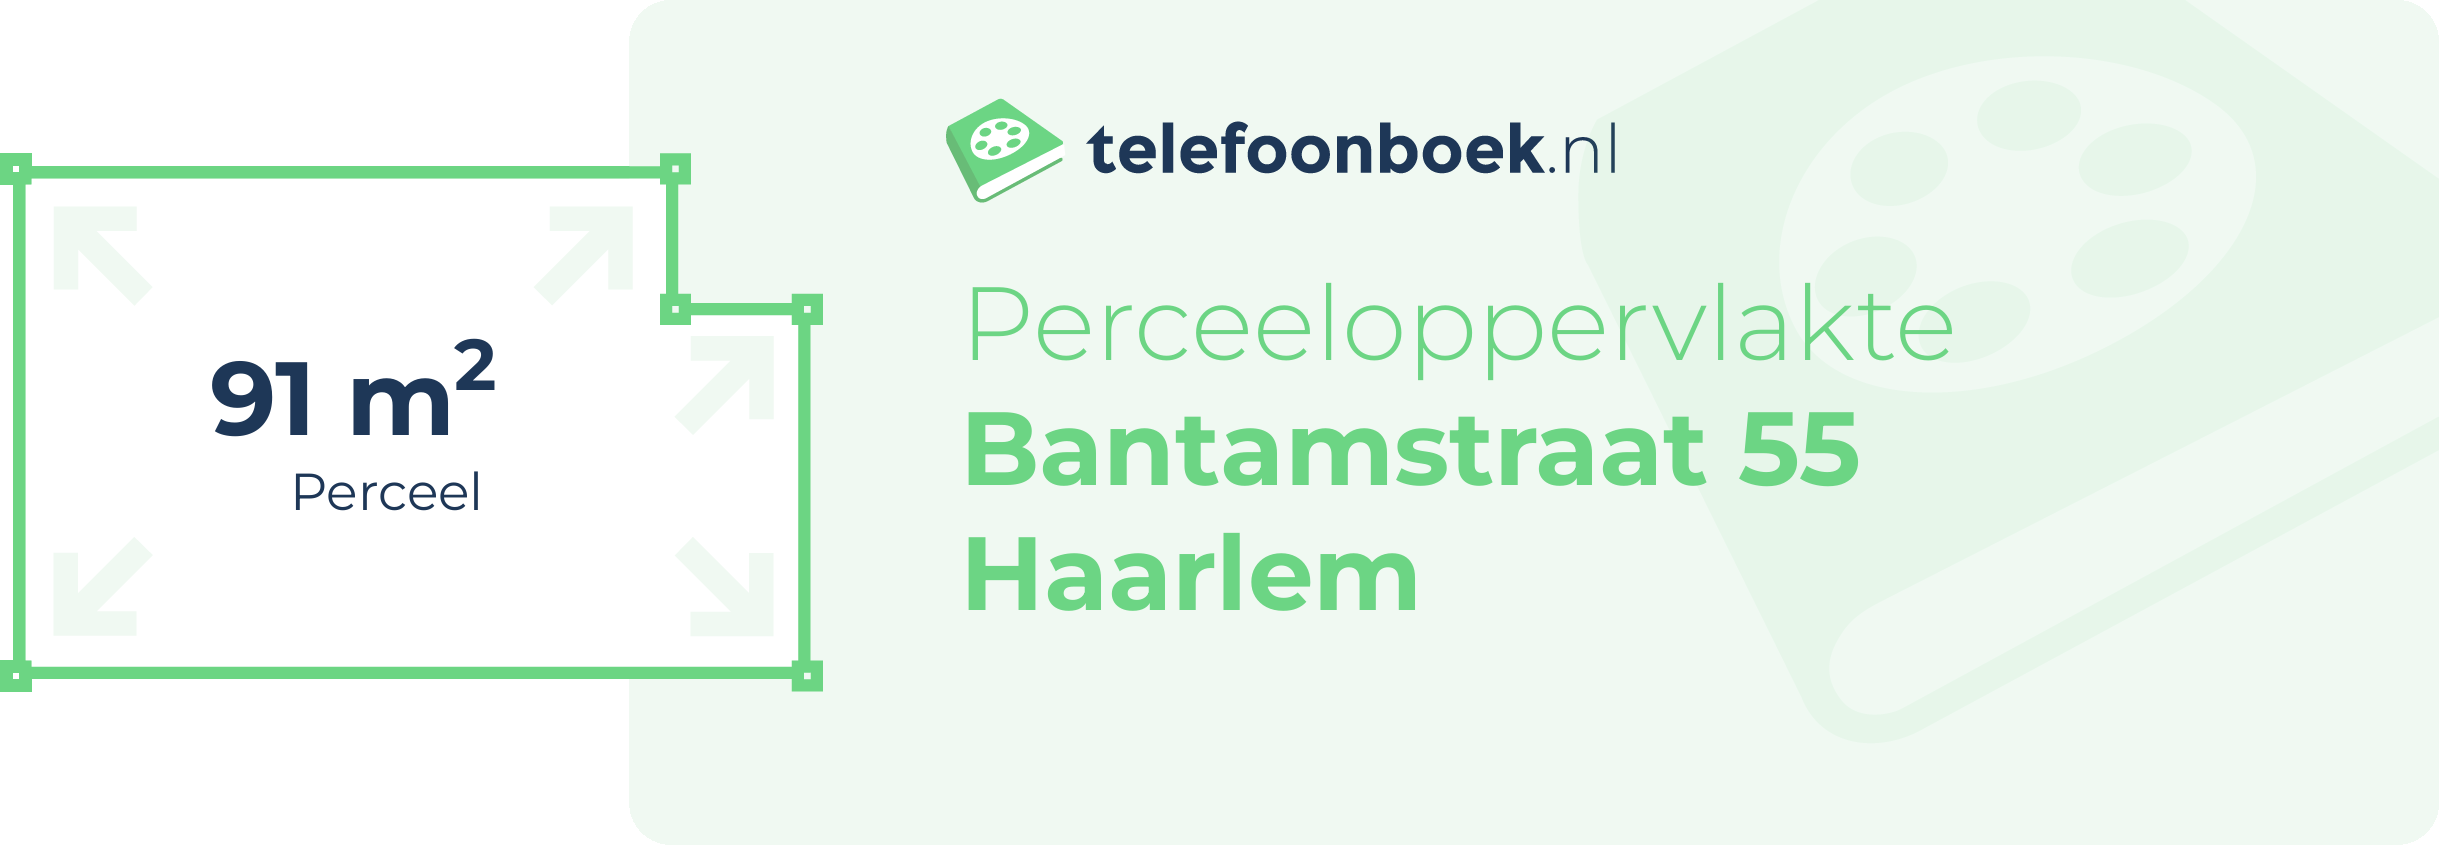 Perceeloppervlakte Bantamstraat 55 Haarlem